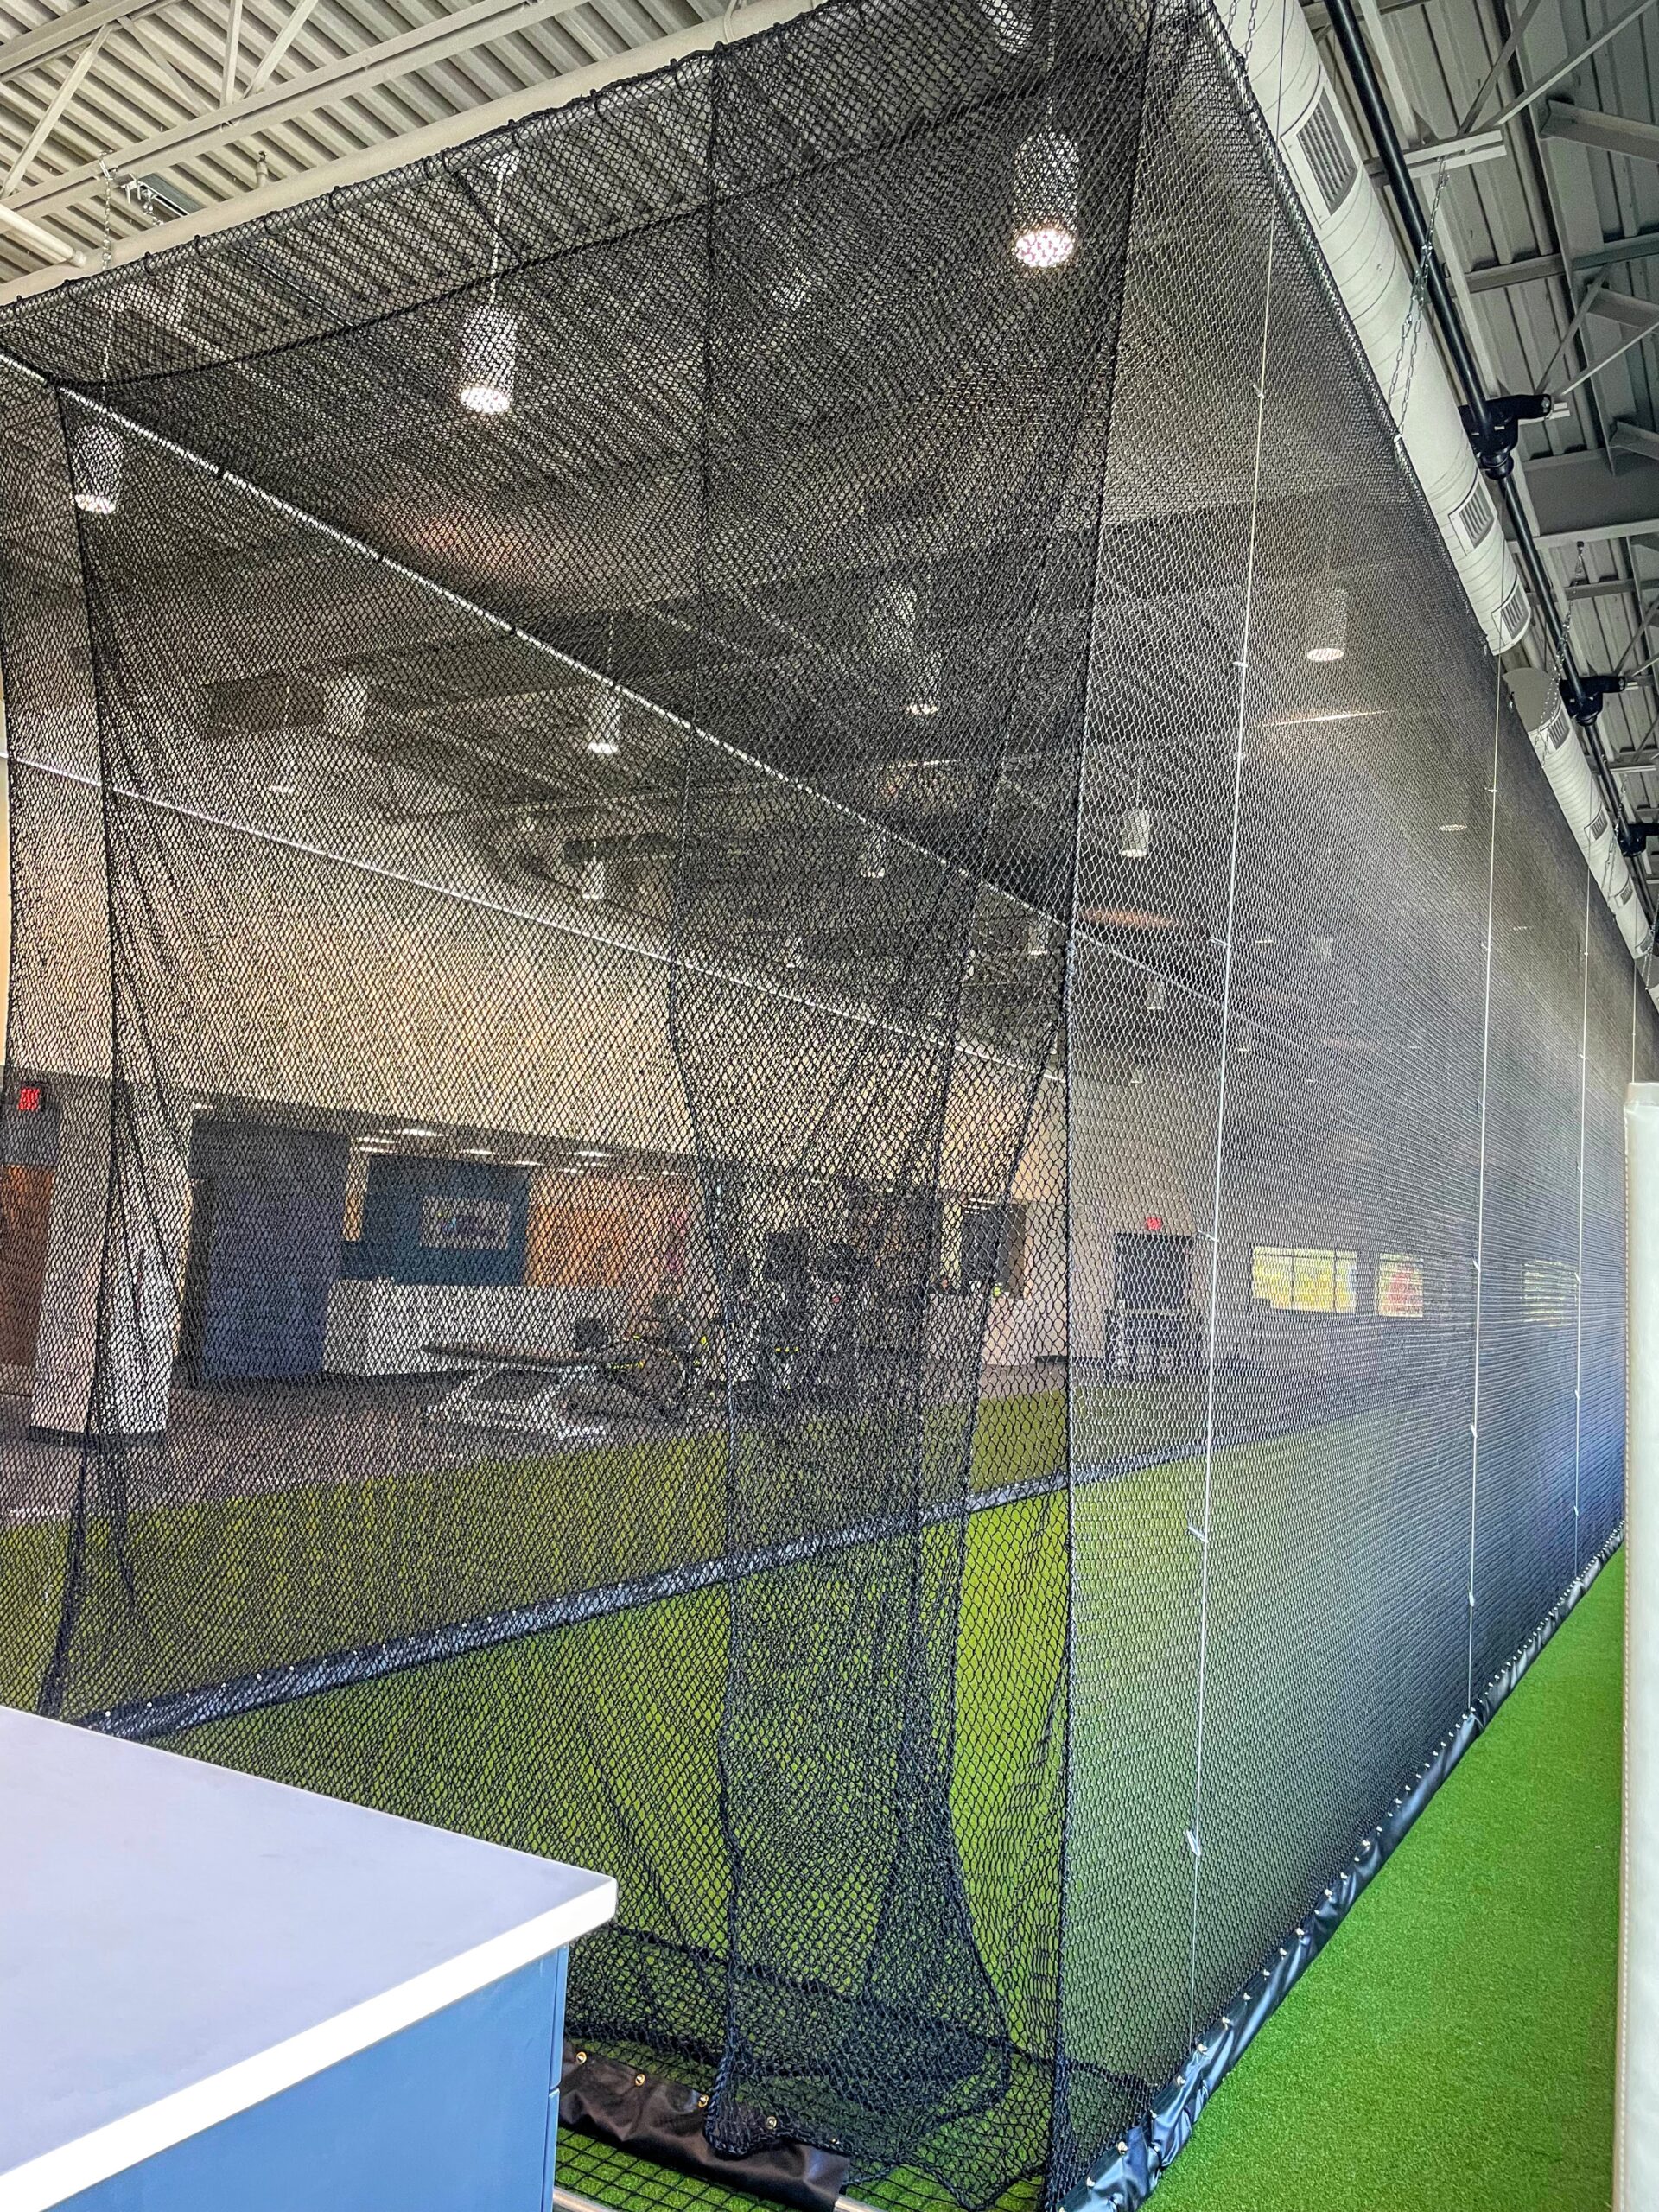 AirCage indoor retractable batting cage